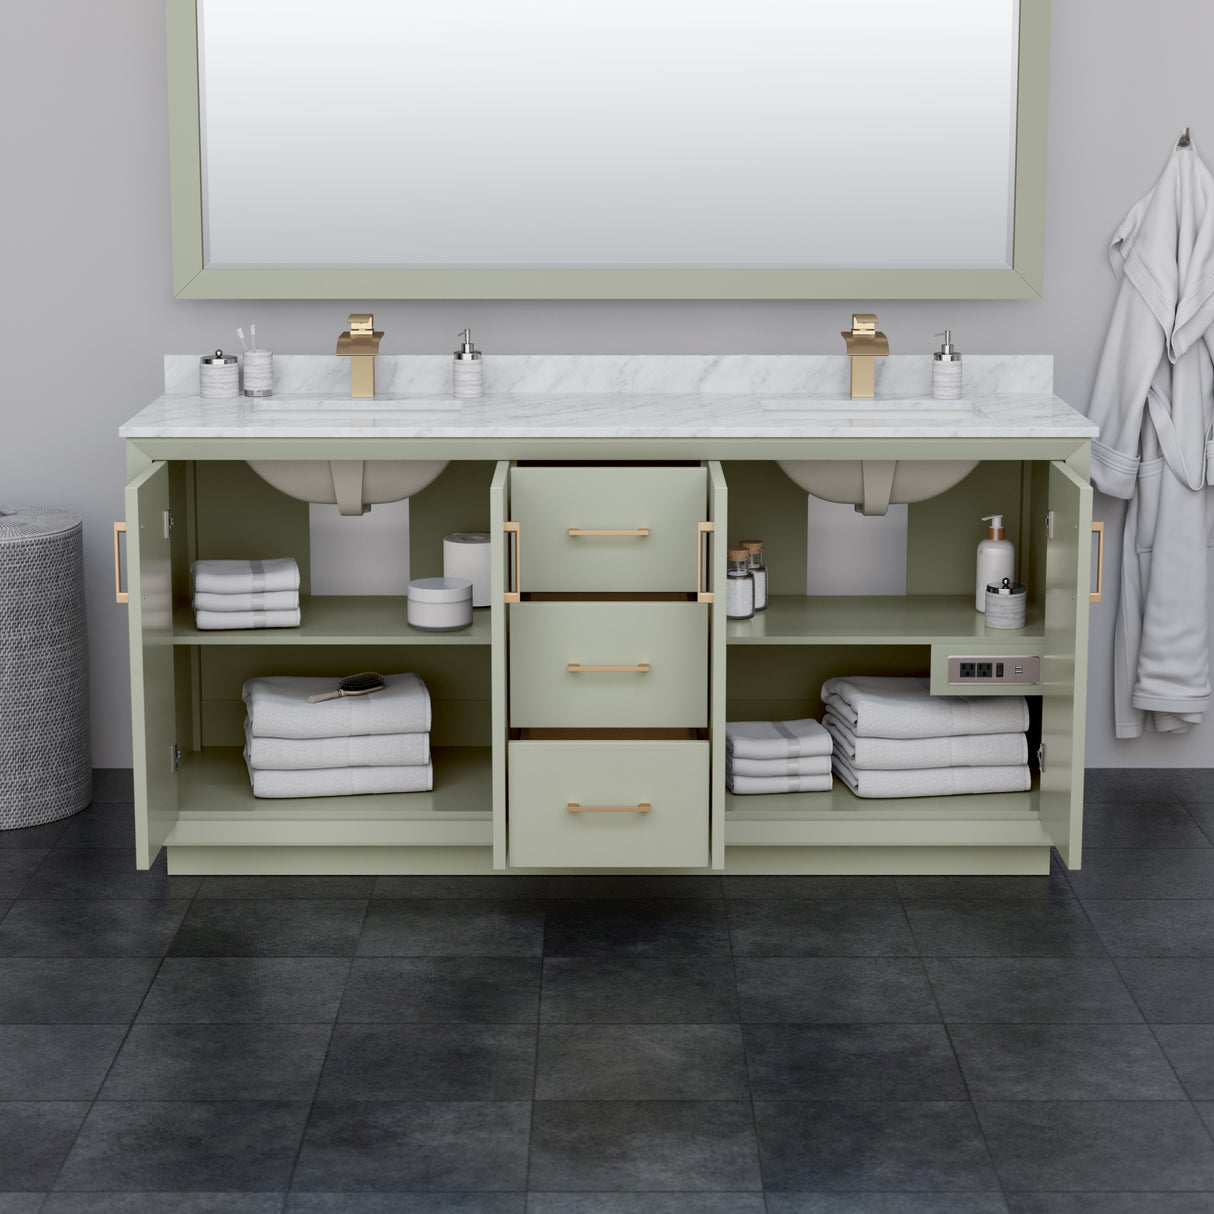 Strada 72 Inch Double Bathroom Vanity in Light Green No Countertop No Sink Brushed Nickel Trim